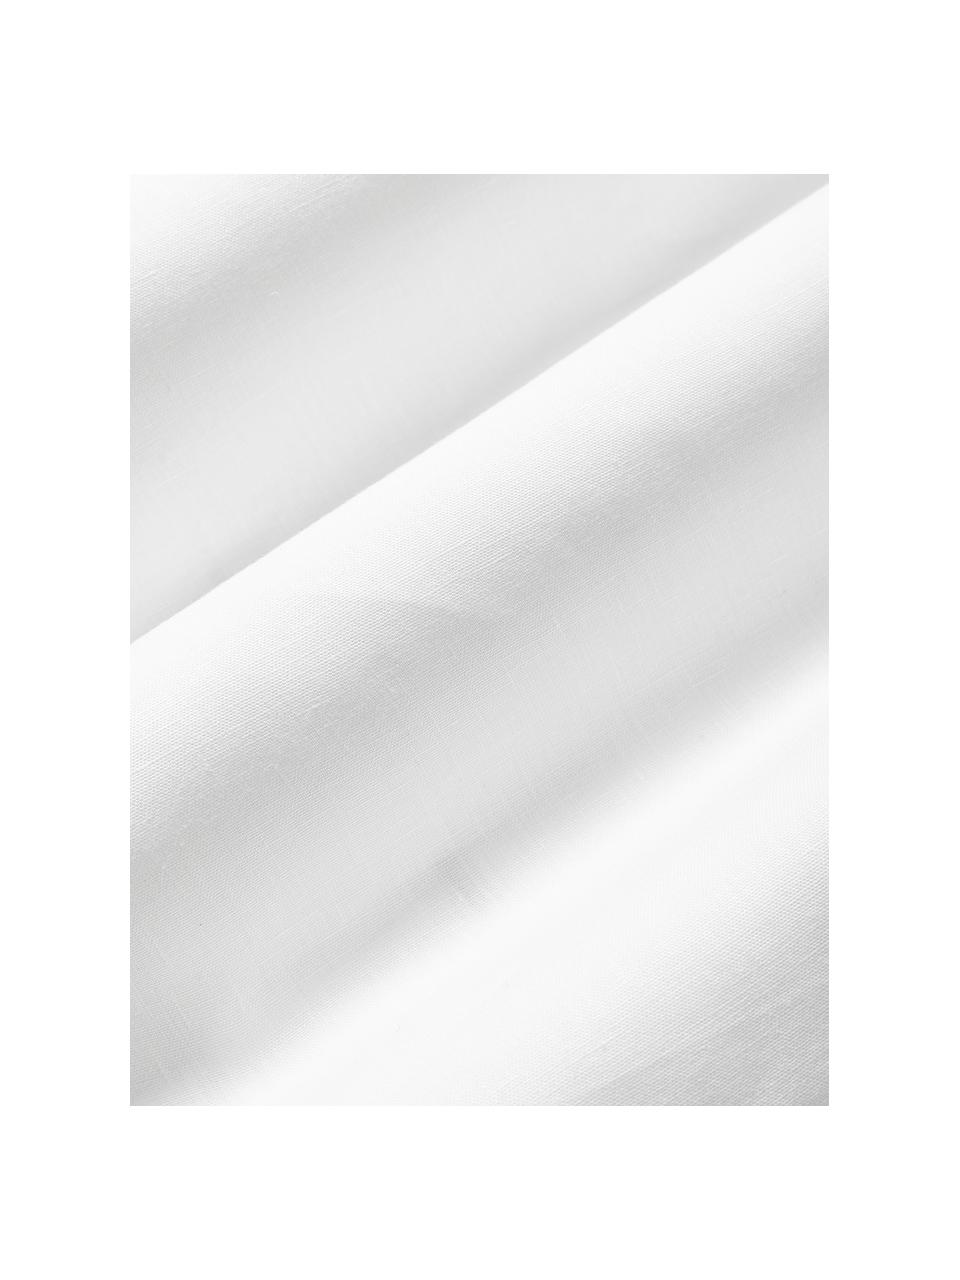 Leinen-Kissenhülle Jaylin mit Stehsaum, 100 % Leinen

Leinen hat von Natur aus eher grobe Haptik und einen natürlichen Knitterlook. Die hohe Reißfestigkeit macht Leinen scheuerfest und strapazierfähig.

Das in diesem Produkt verwendete Material ist schadstoffgeprüft und zertifiziert nach STANDARD 100 by OEKO-TEX®, 6760CIT, CITEVE., Weiß, B 45 x L 45 cm